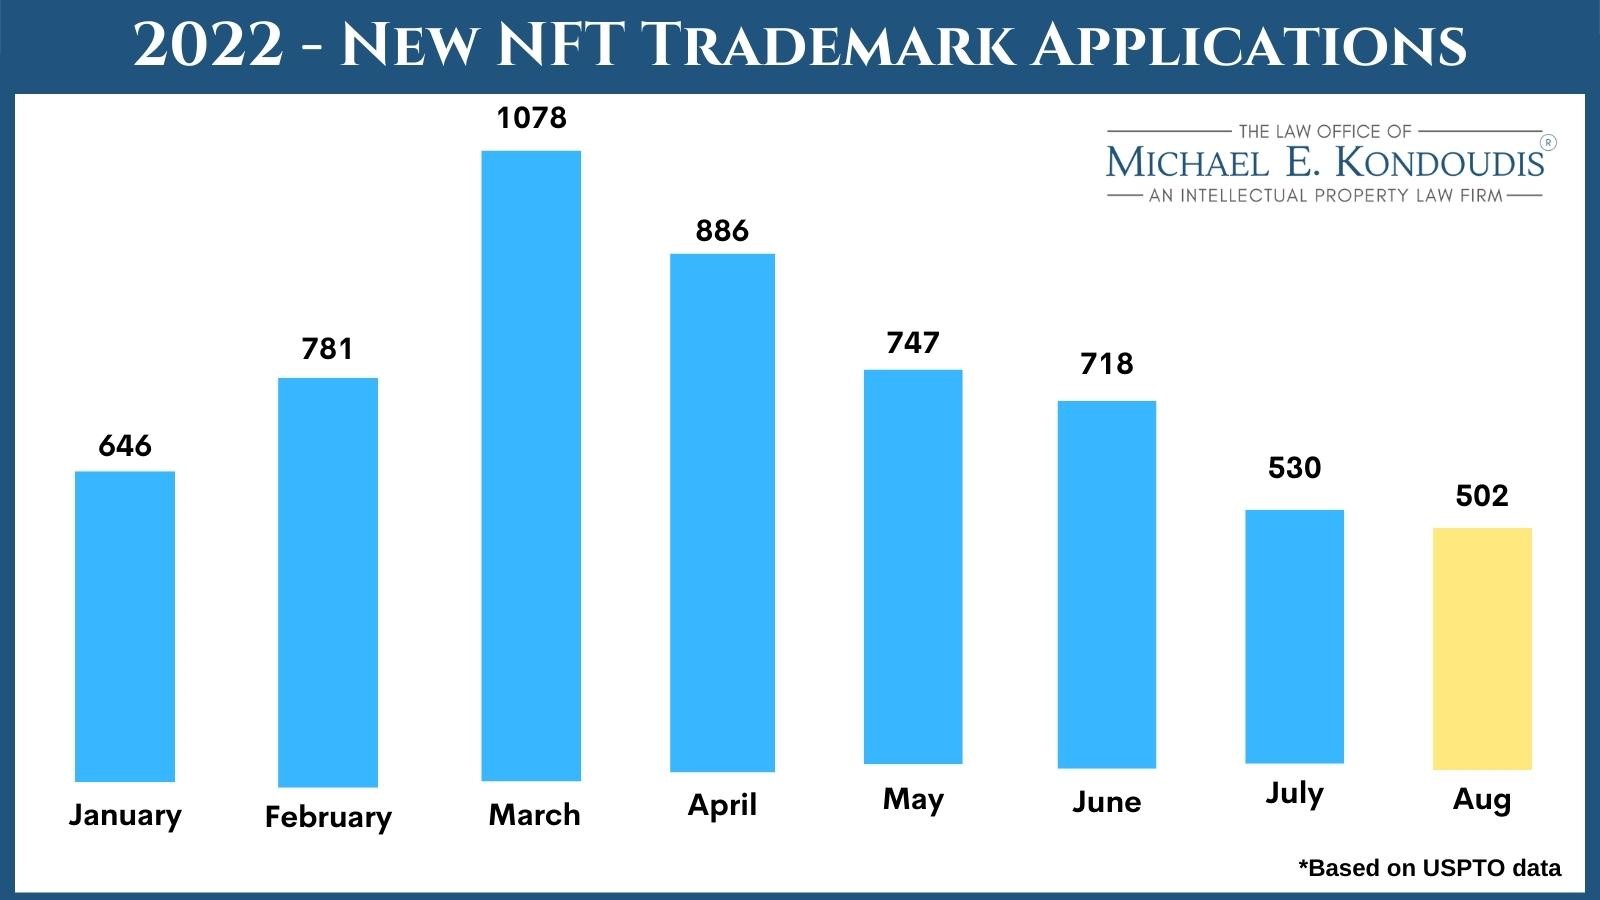 2022 New NFT trademark application graph